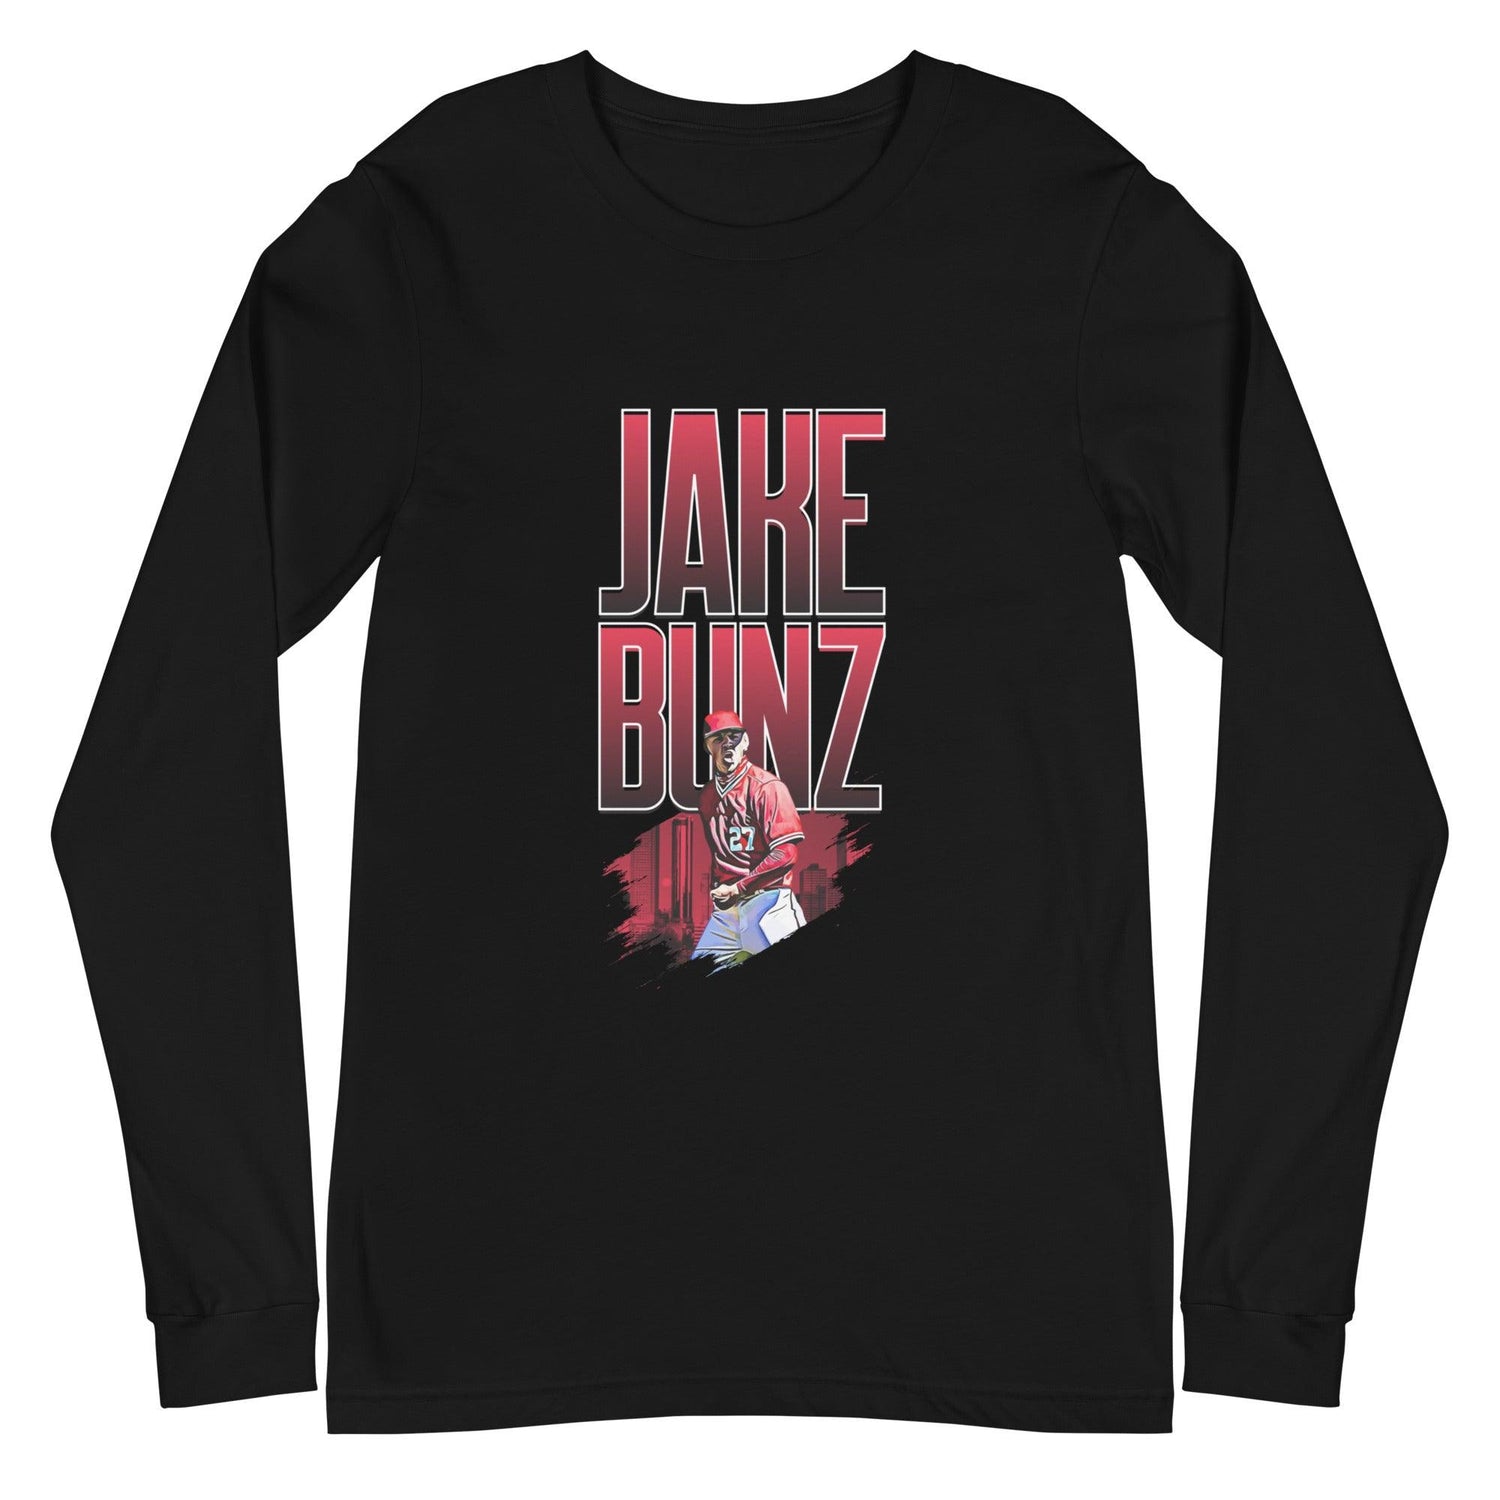 Jake Bunz "Celebrate" Long Sleeve Tee - Fan Arch